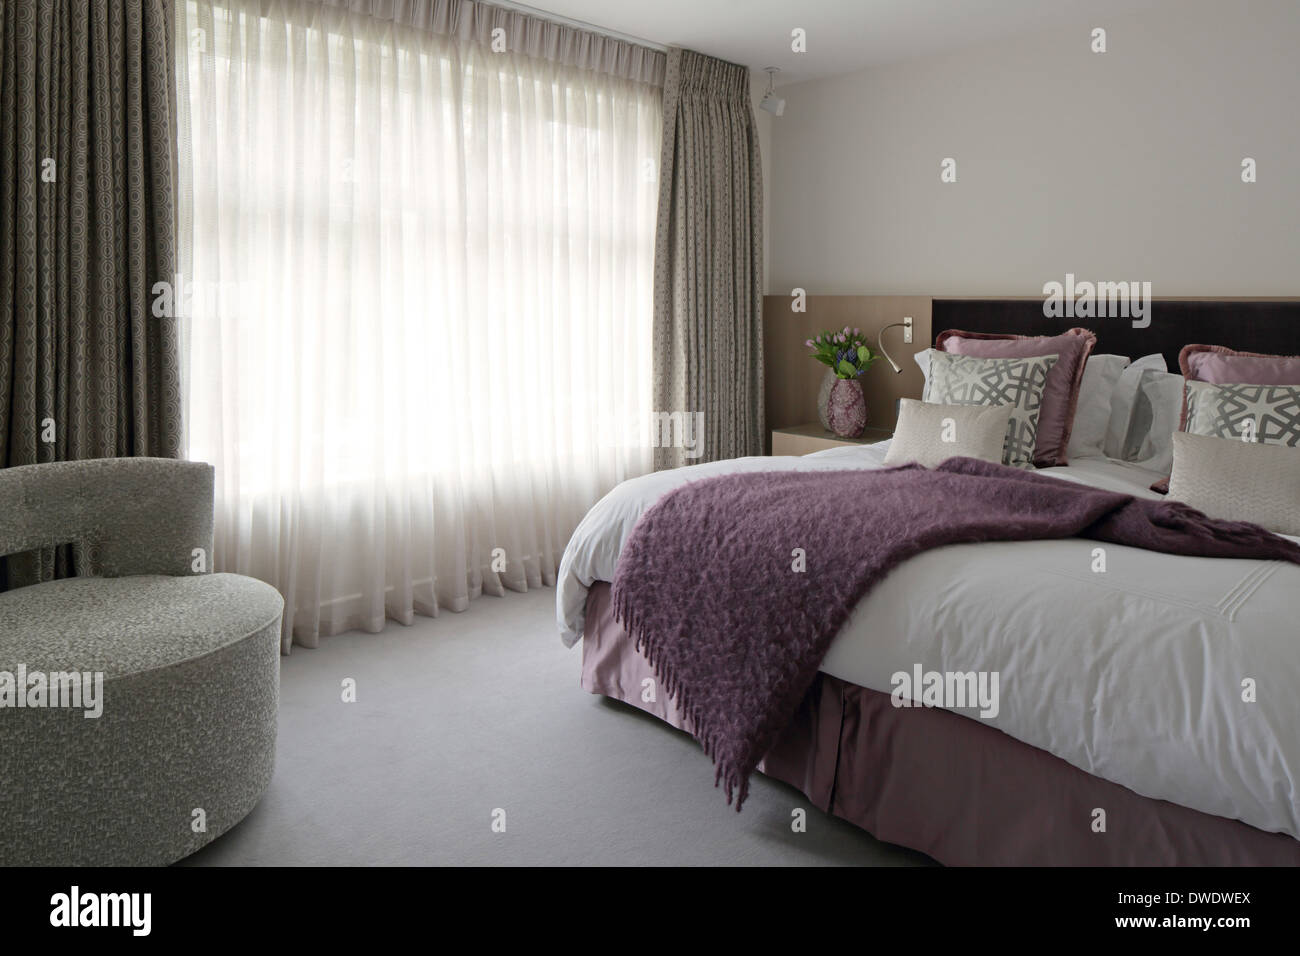 Inglese americano Country Home Interiors, Londra, Regno Unito. Architetto: DK interni, 2013. Camera da letto. Foto Stock